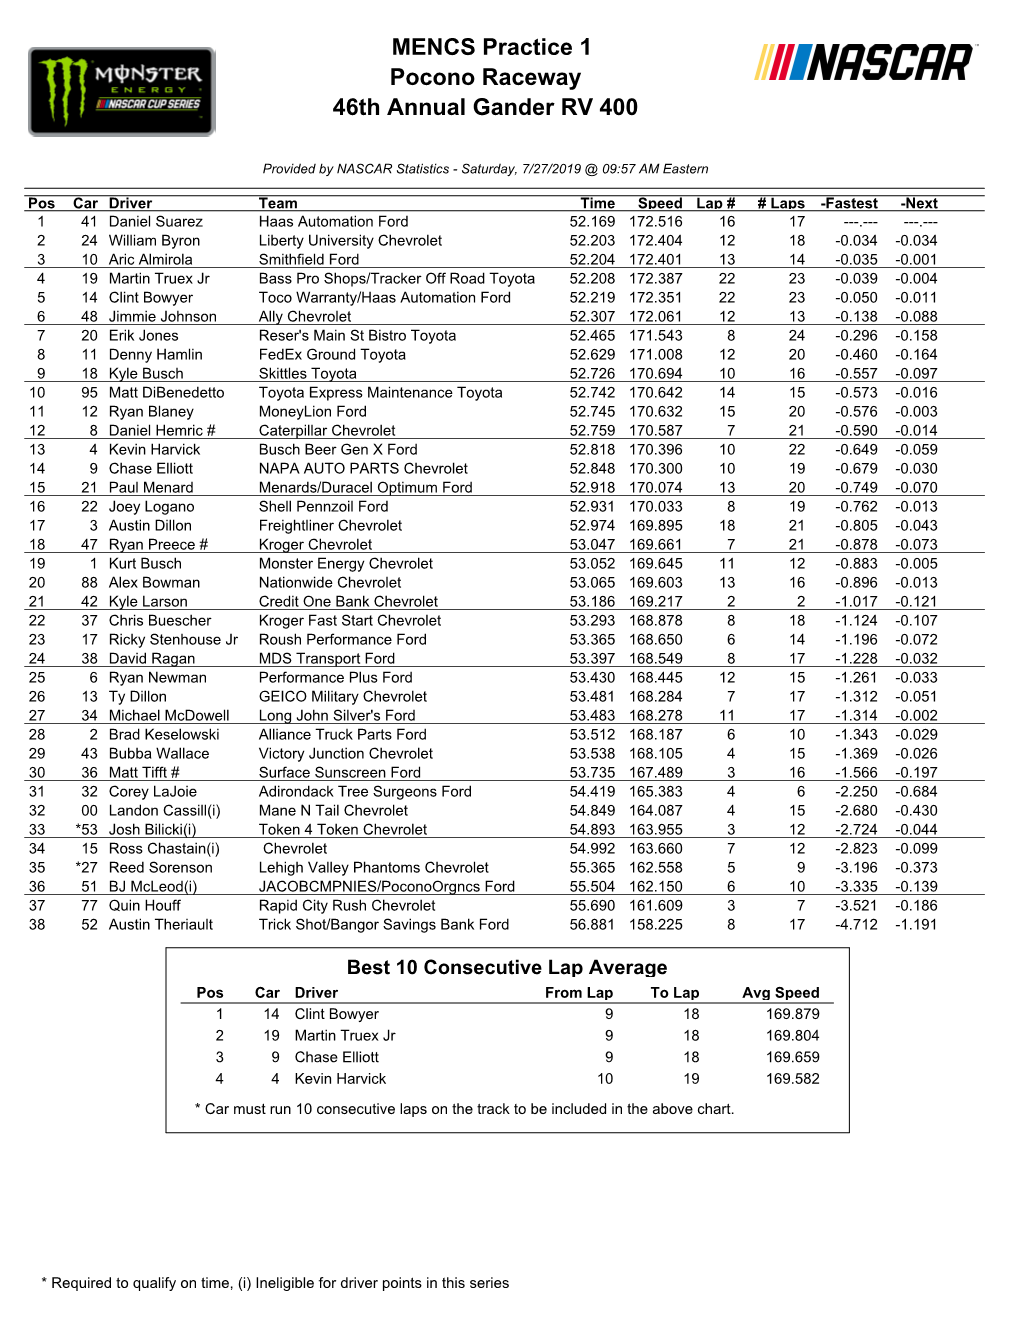 MENCS Practice 1 Pocono Raceway 46Th Annual Gander RV 400